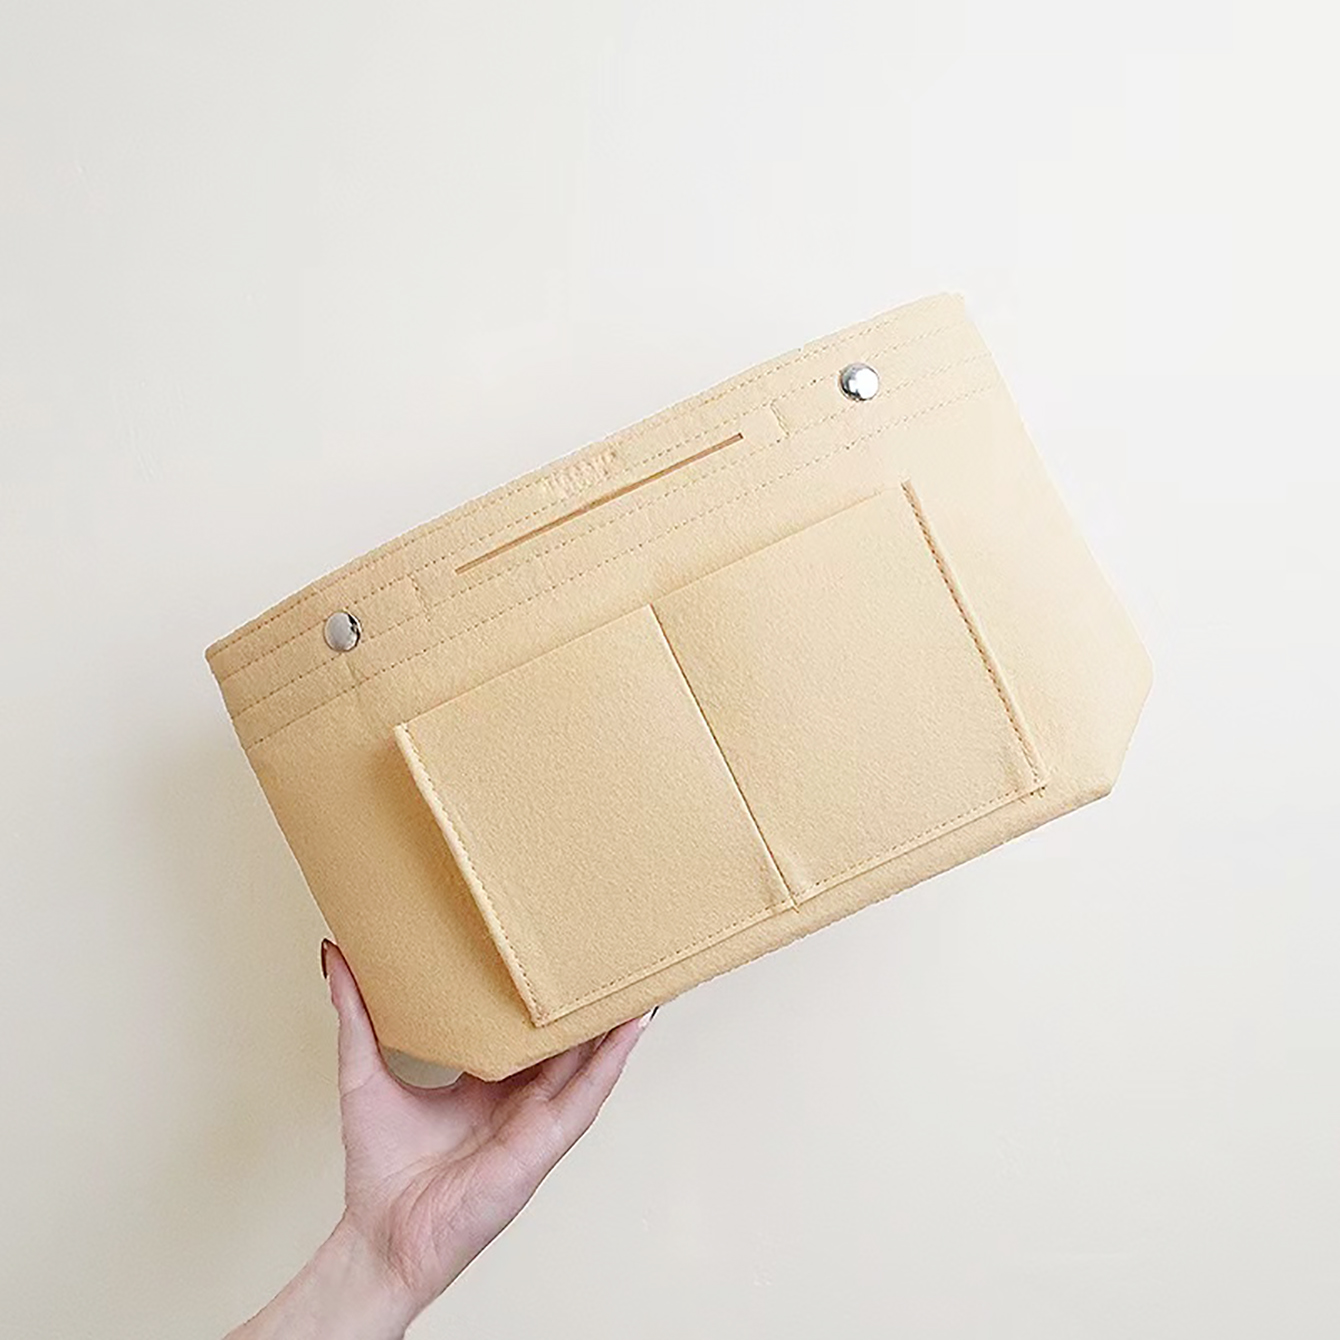 Multi-Pocket Insert Bag Felt Purse Clutch Handbag Liner Wallet Tote  Organizer US